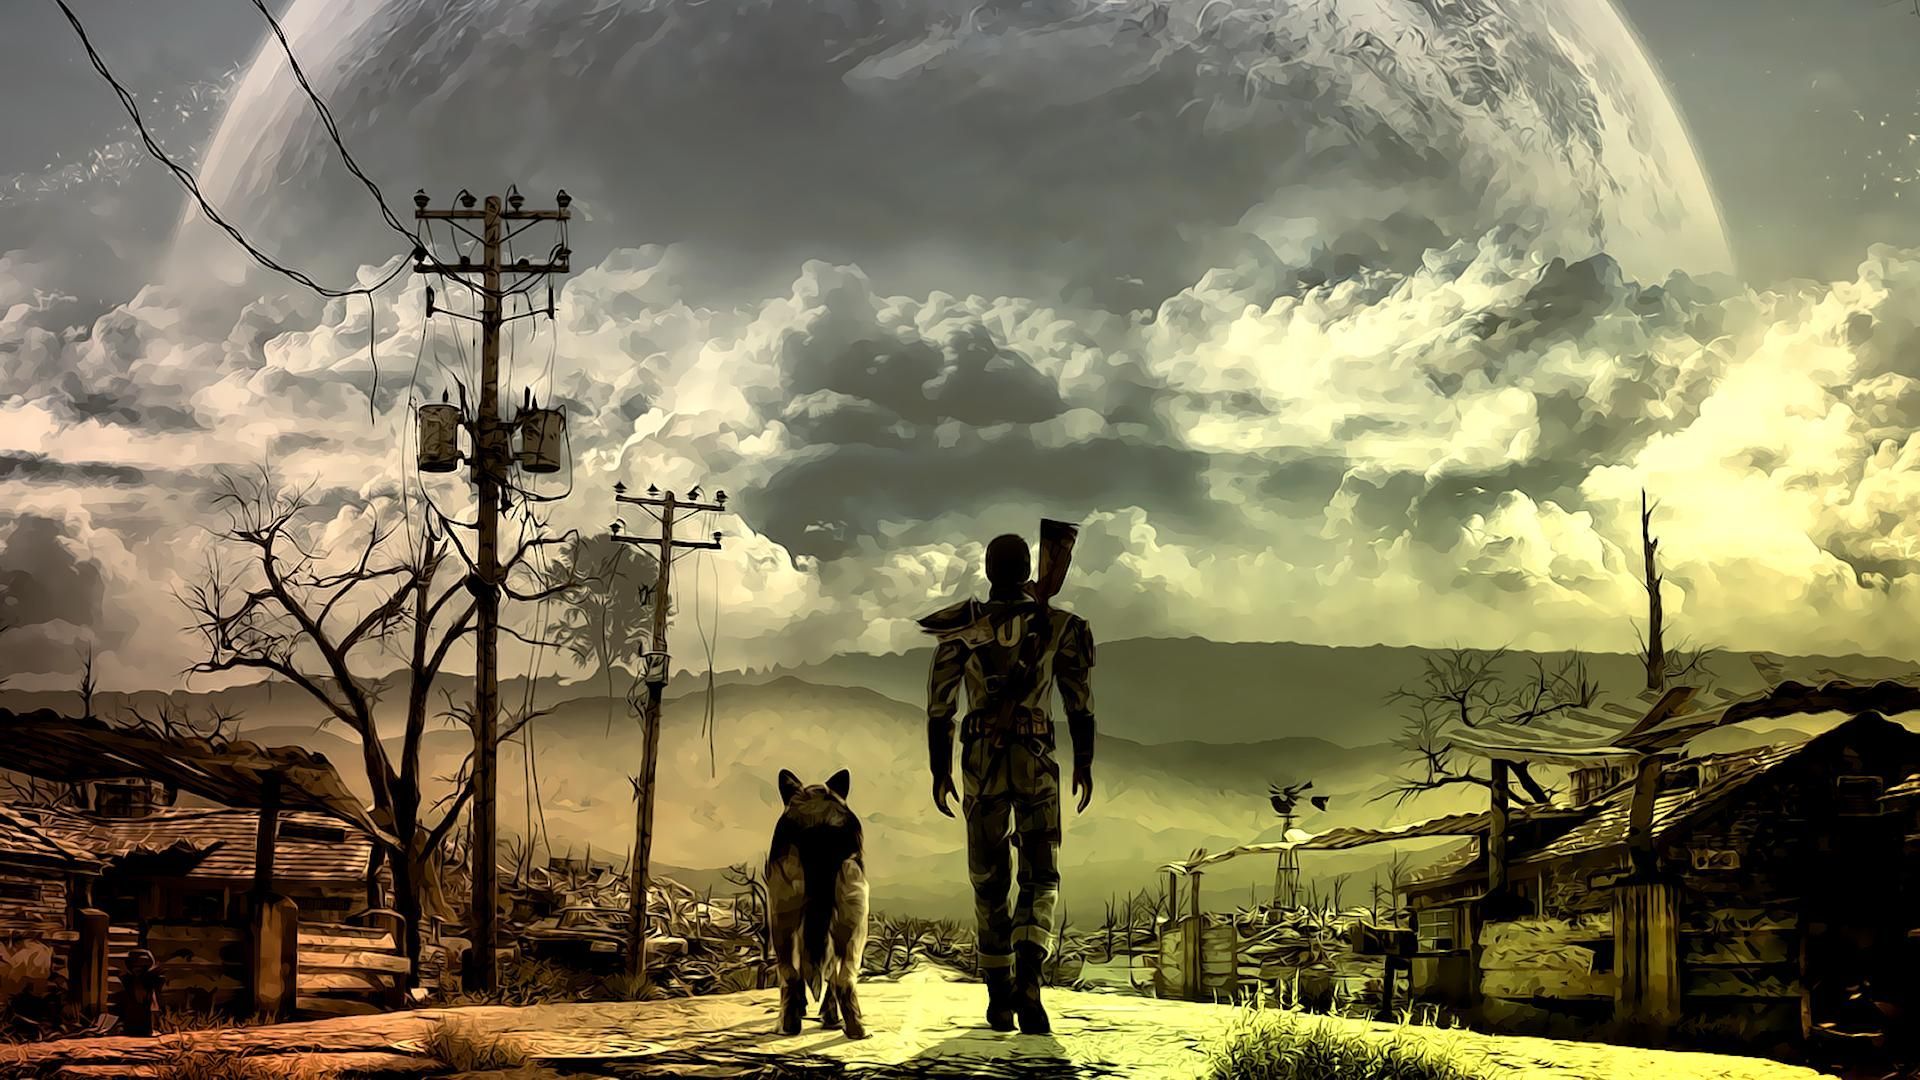 Fallout HD Desktop Wallpaper #fallout #hd #desktop #wallpaper